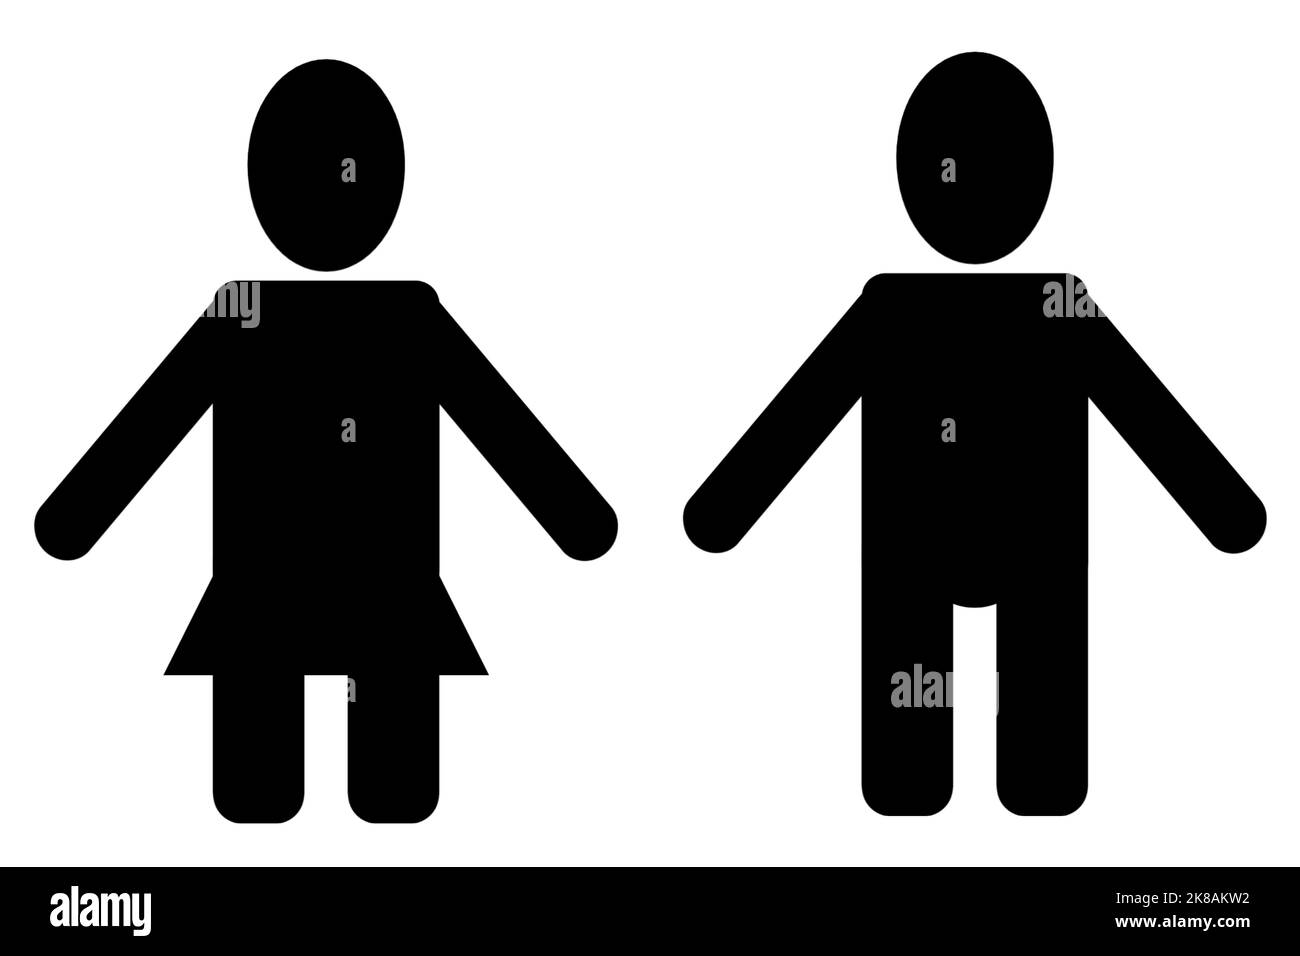 A Silhouette style homme femme icône plate signe symbole Avatar pictogramme toilettes salle de toilettes travail d'équipe forme de l'entreprise logo Graphic Design Art Illustration Phot Banque D'Images